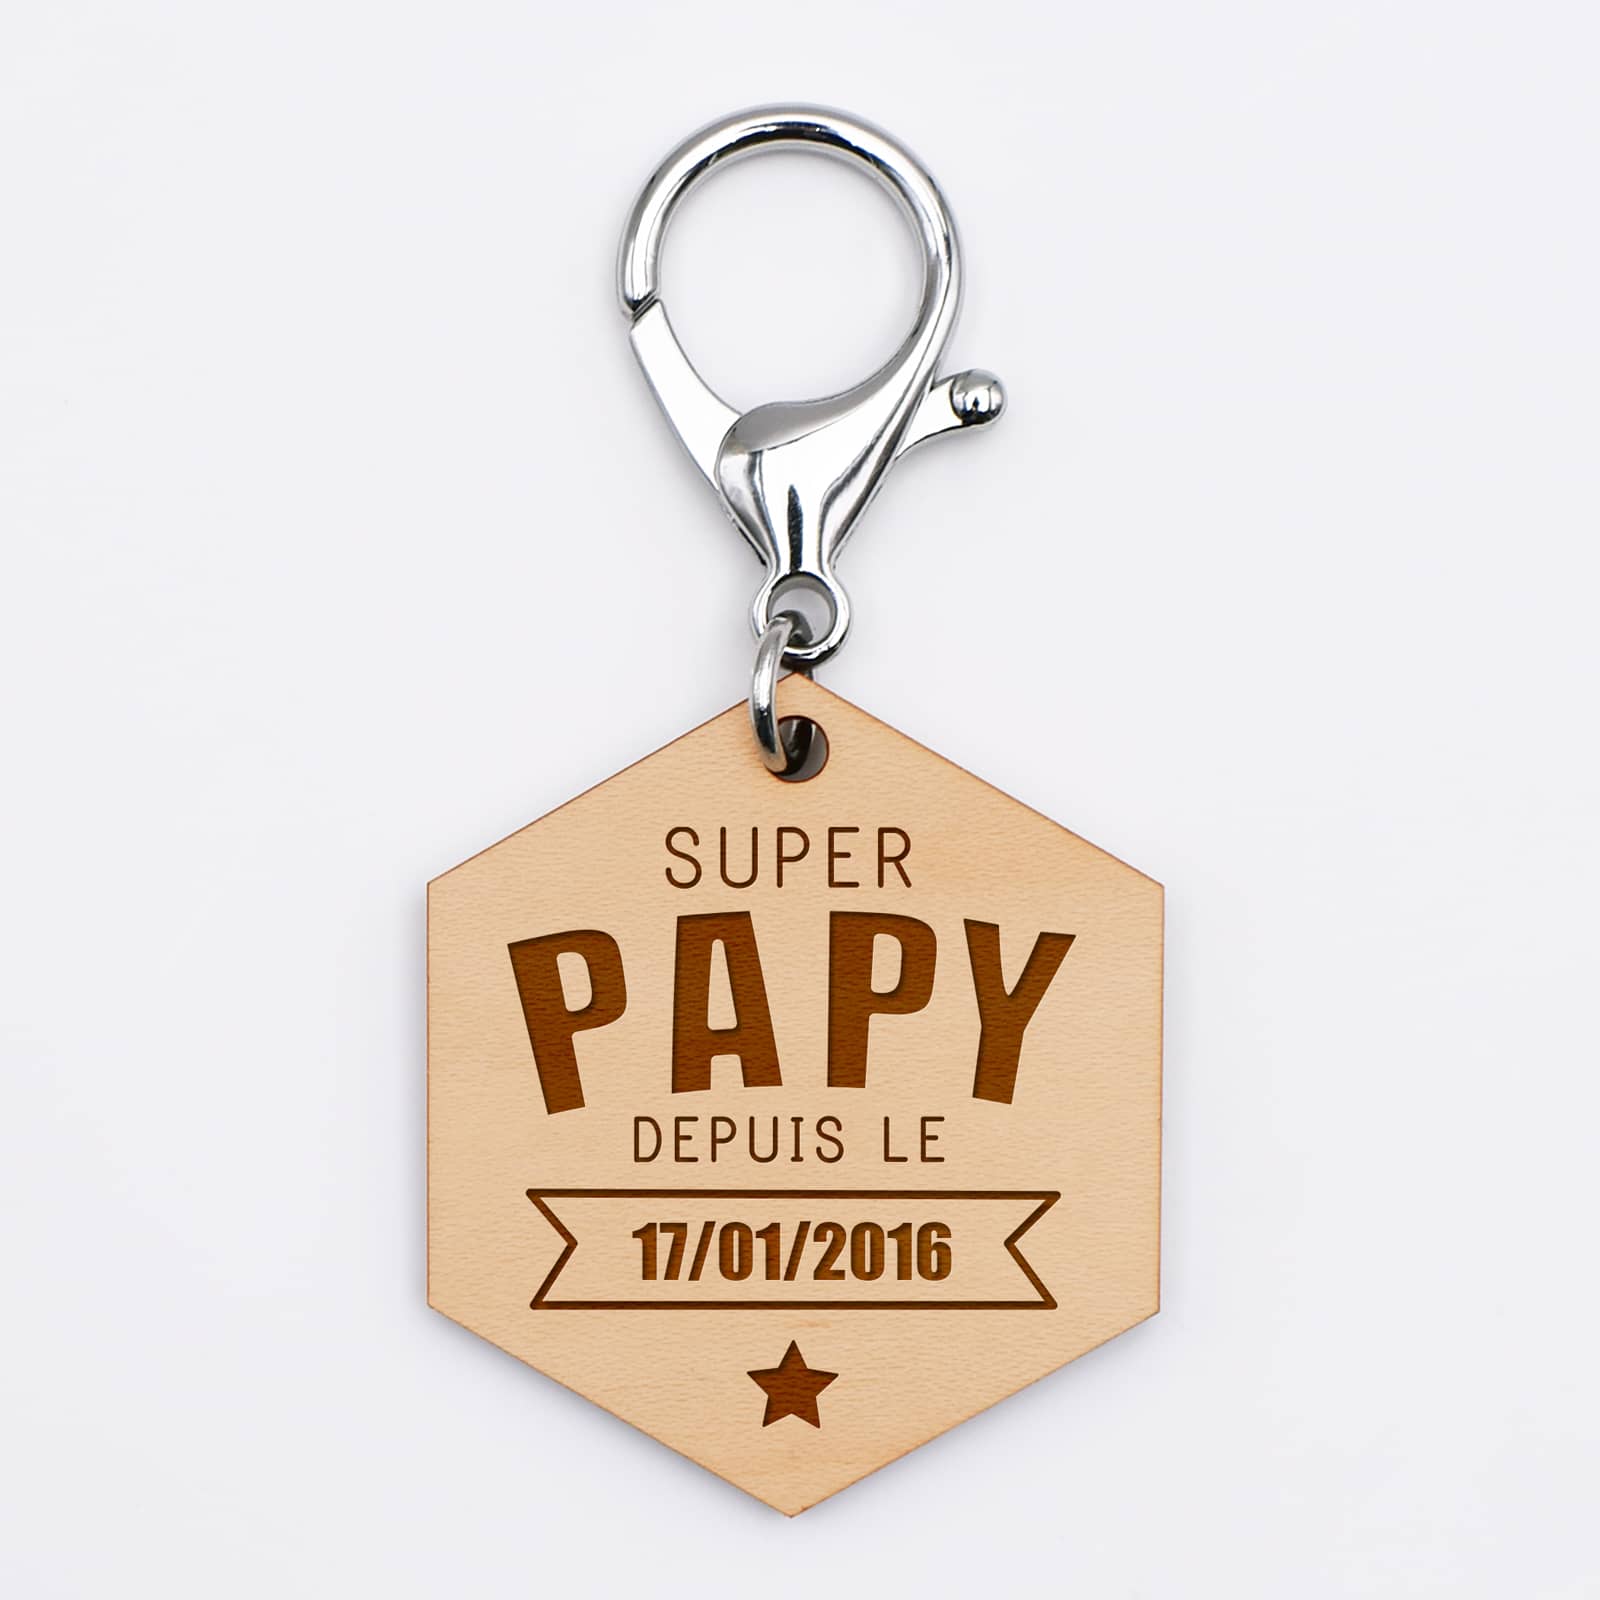 Porte-clé cadeau personnalisé Super PAPY, je suis la SUPER PAPY de..